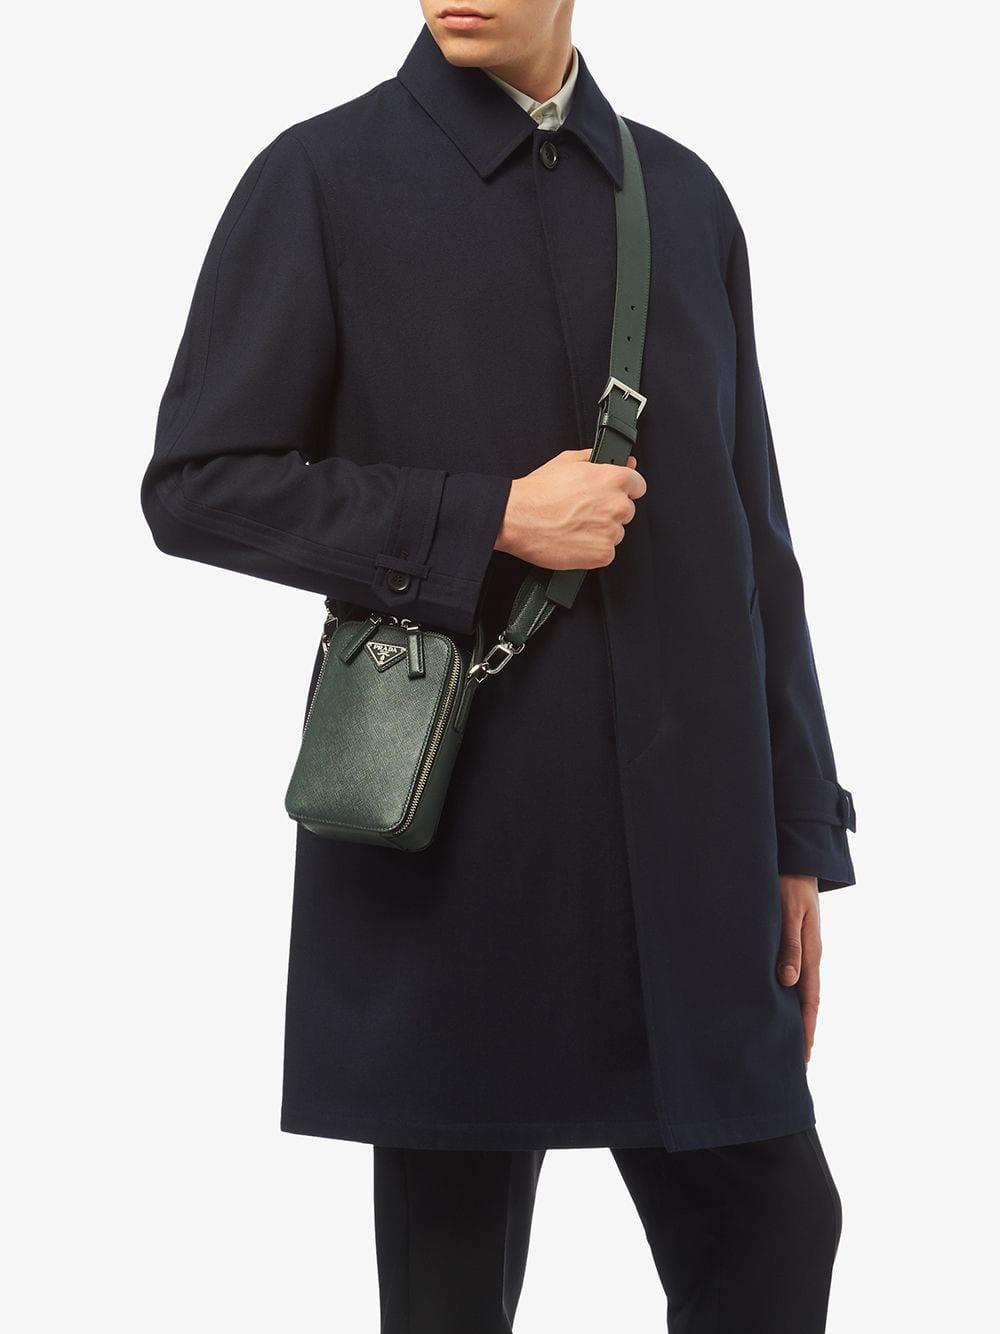 Bijwerken Rendezvous Ophef Prada Brique Saffiano Leather Bag in Green for Men | Lyst